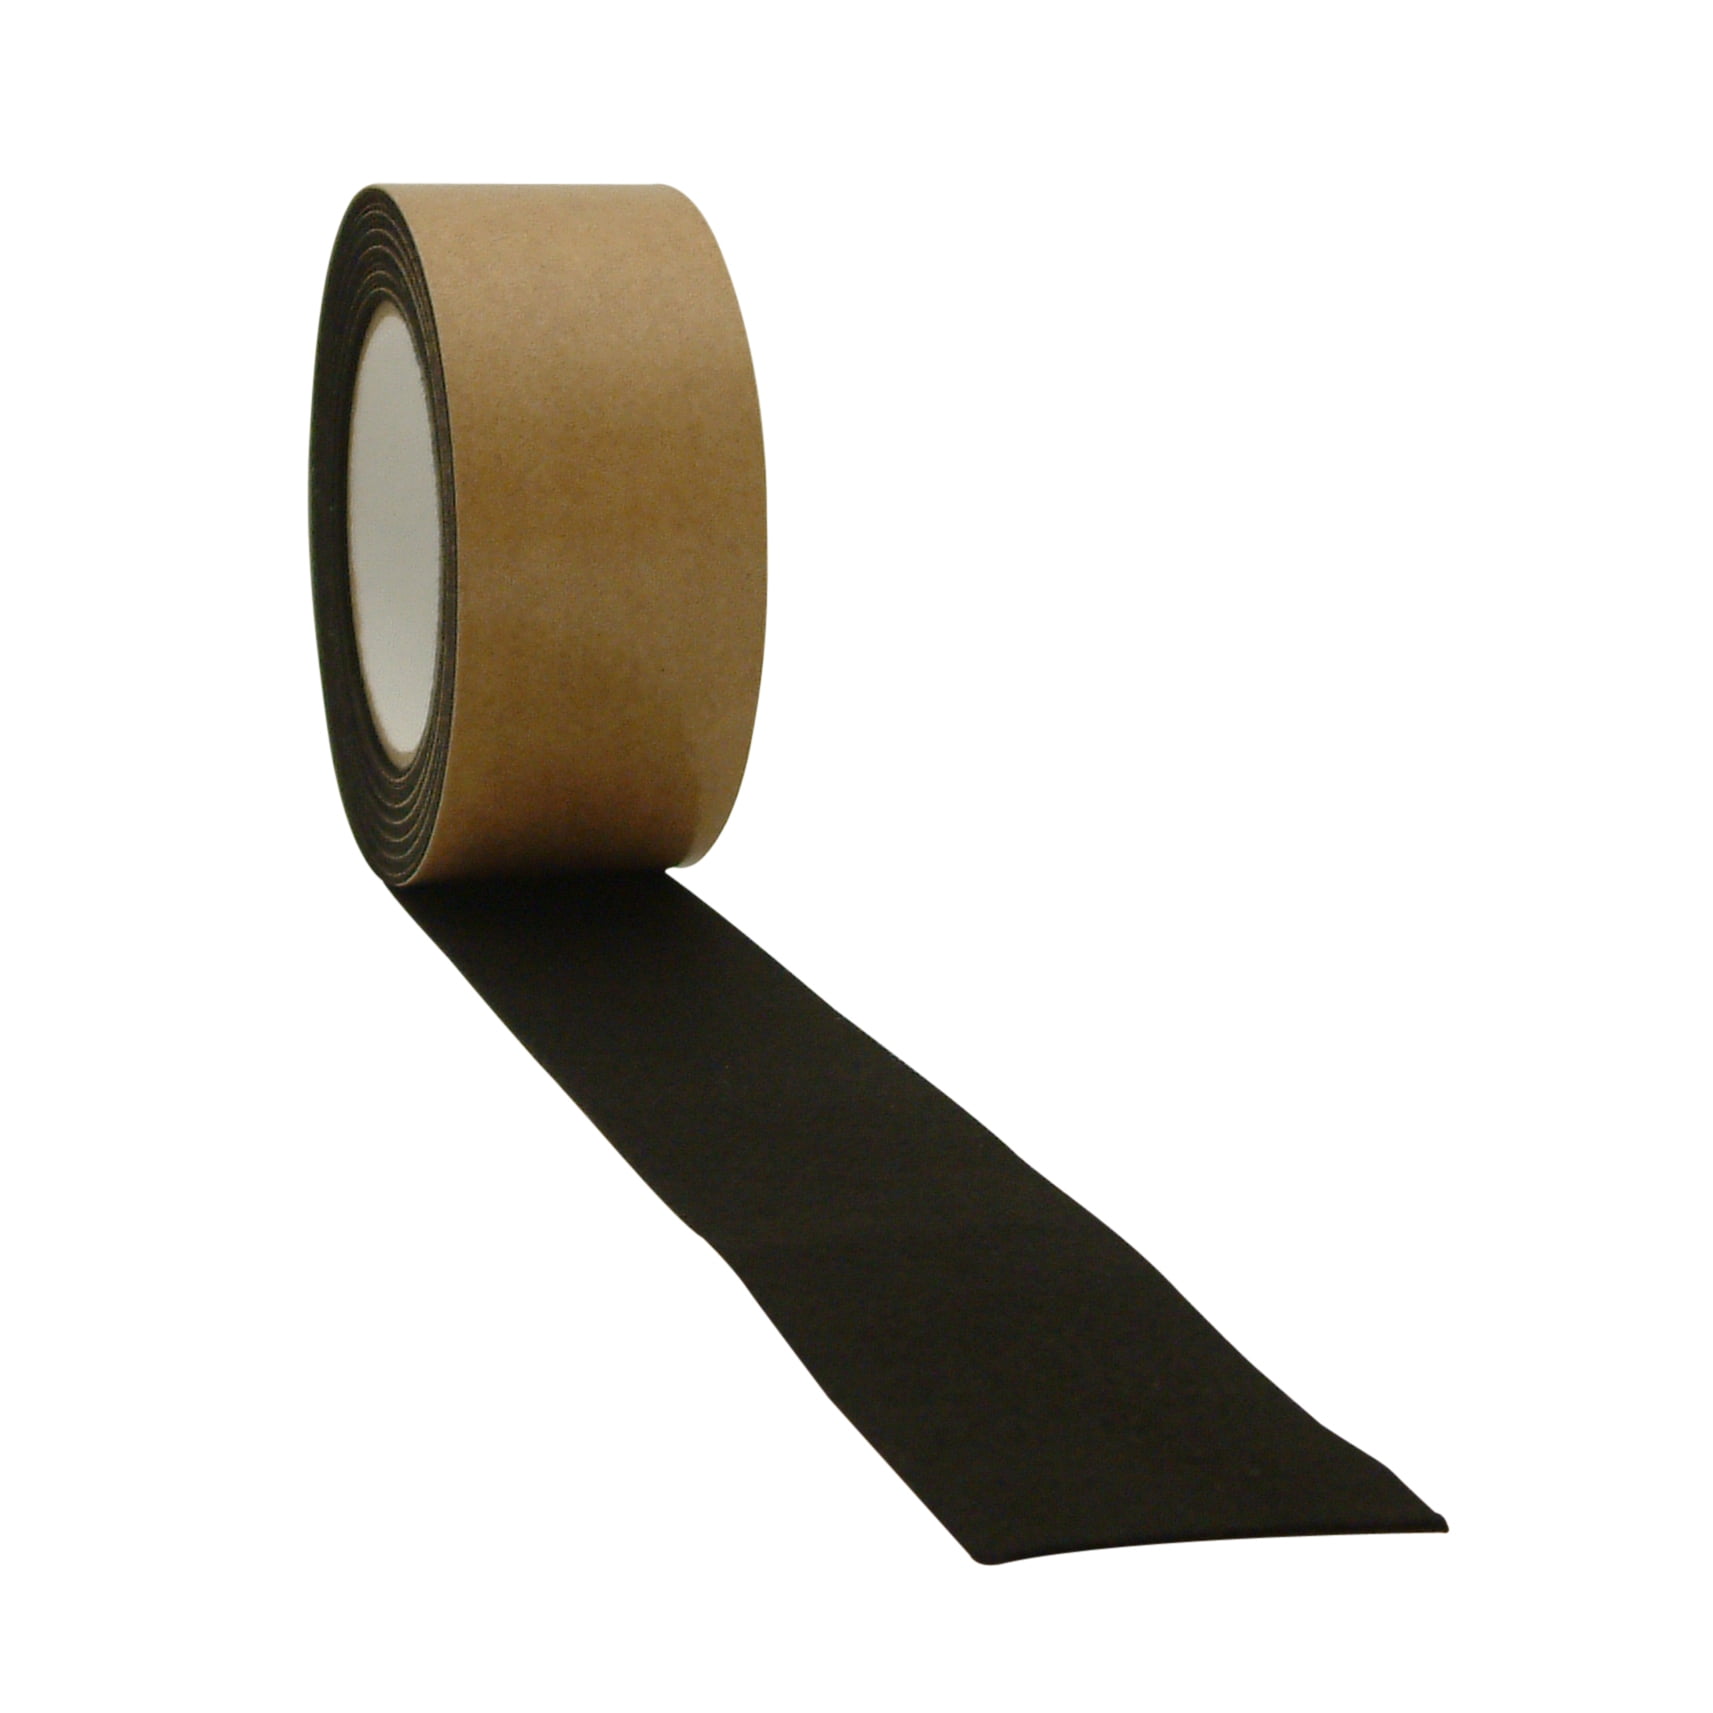 x 15 ft. JVCC FELT-06 Polyester Felt Tape Black : 1-1/2 in 1mm thickness felt 